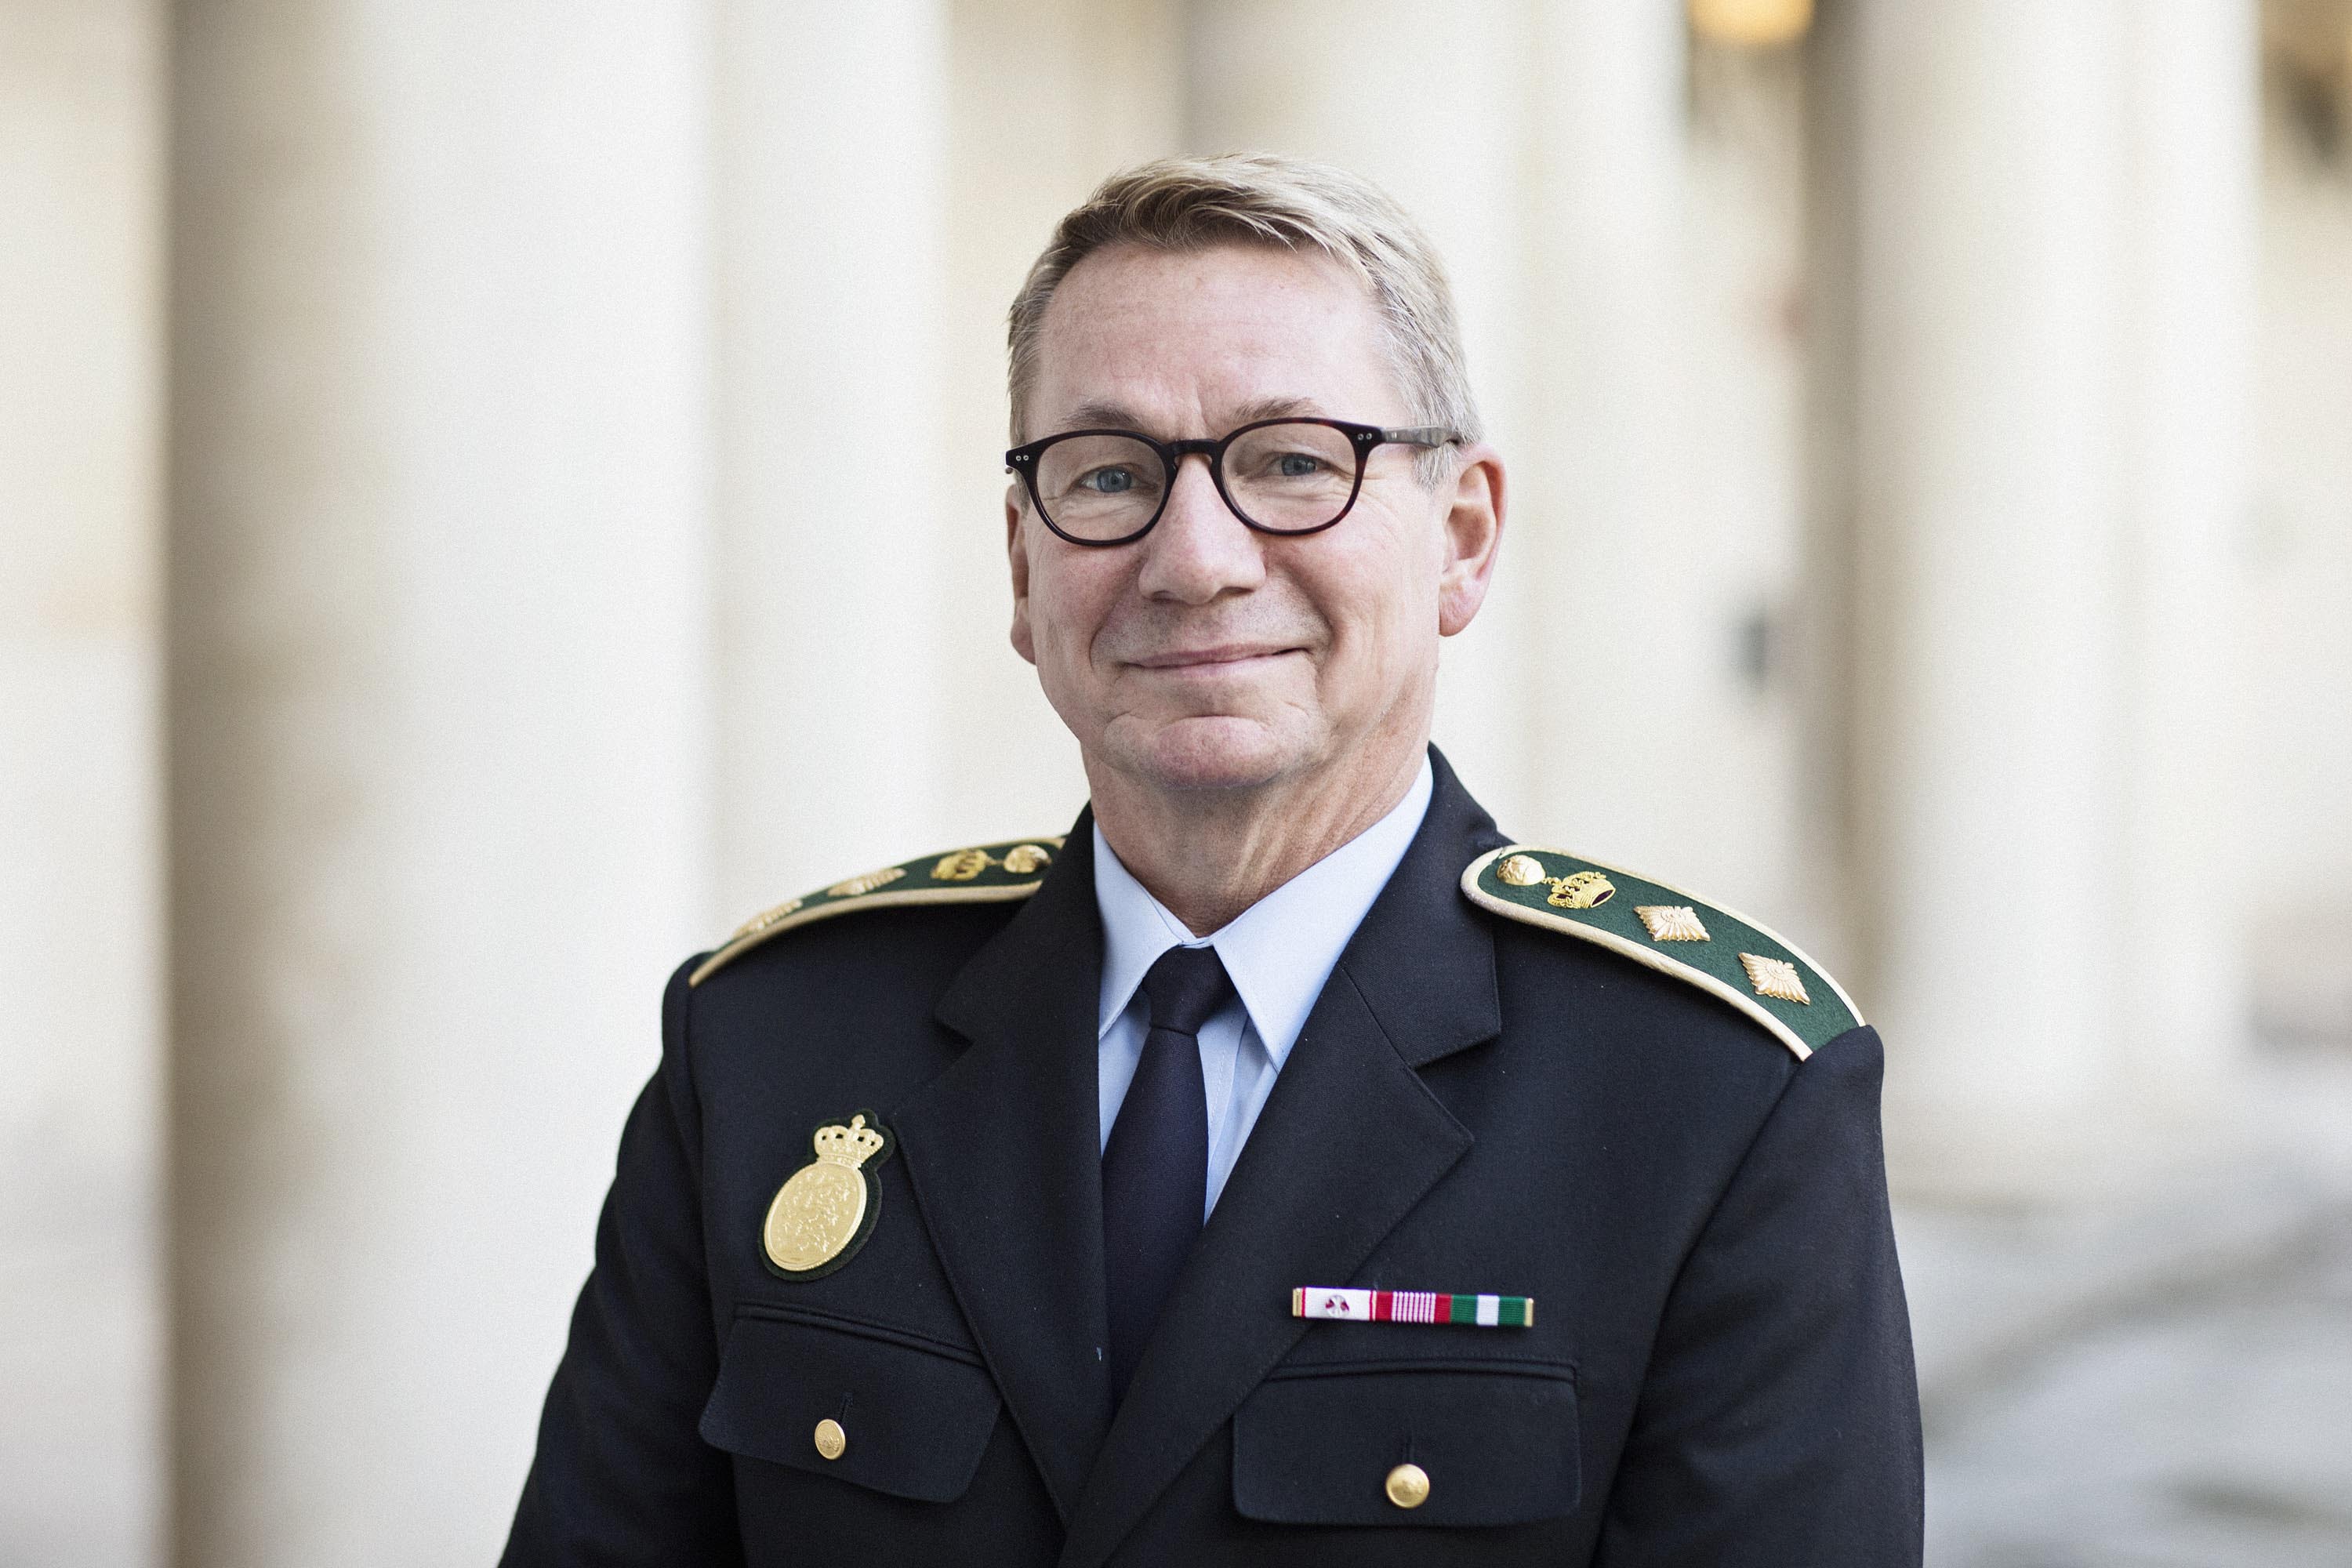 Politidirektør Arne Gram, Fyns Politi